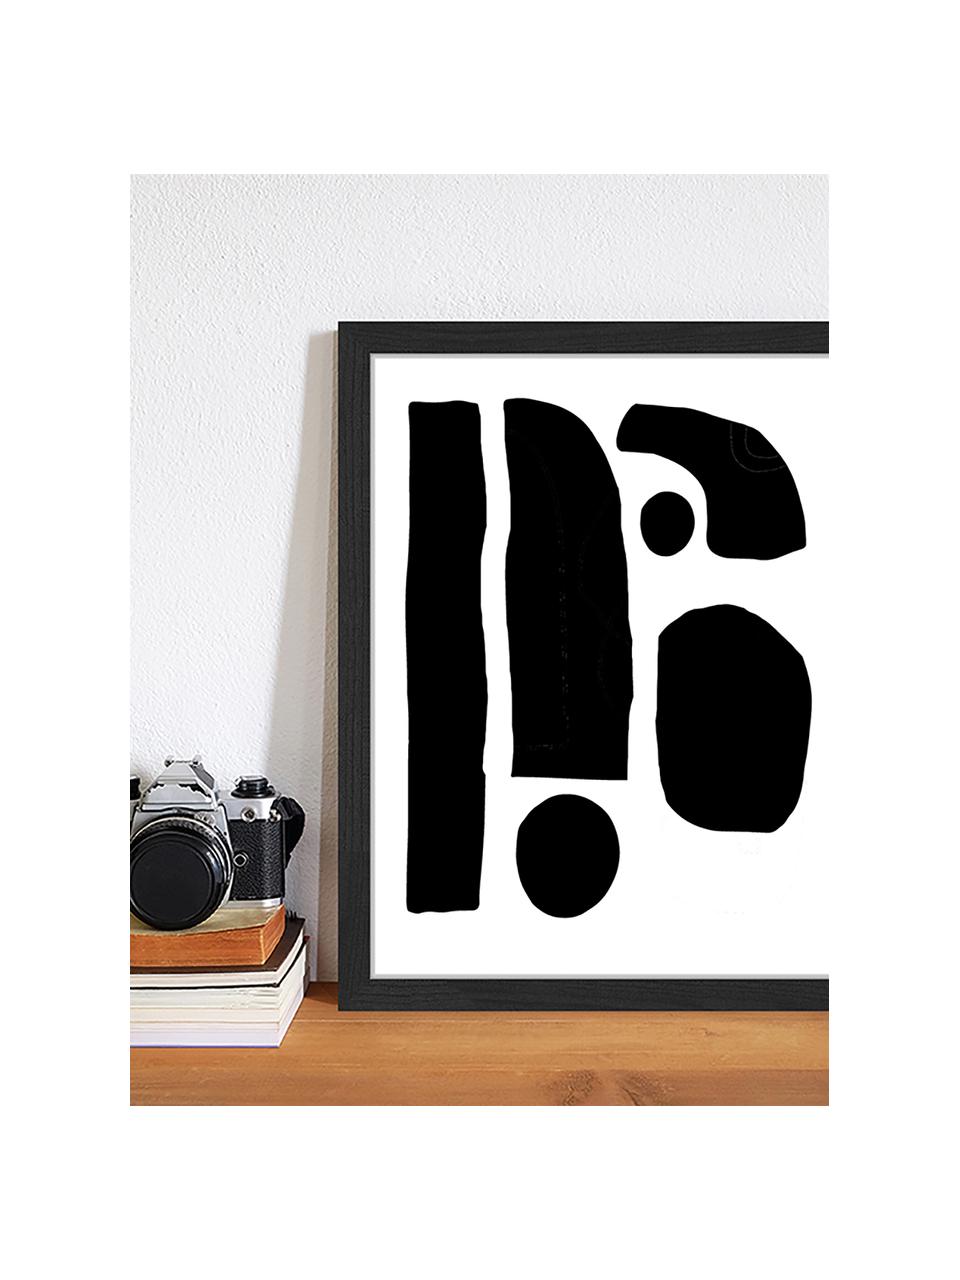 Gerahmter Digitaldruck Geometric Collage, Bild: Digitaldruck auf Papier, , Rahmen: Holz, lackiert, Front: Plexiglas, Schwarz, Weiss, 33 x 43 cm